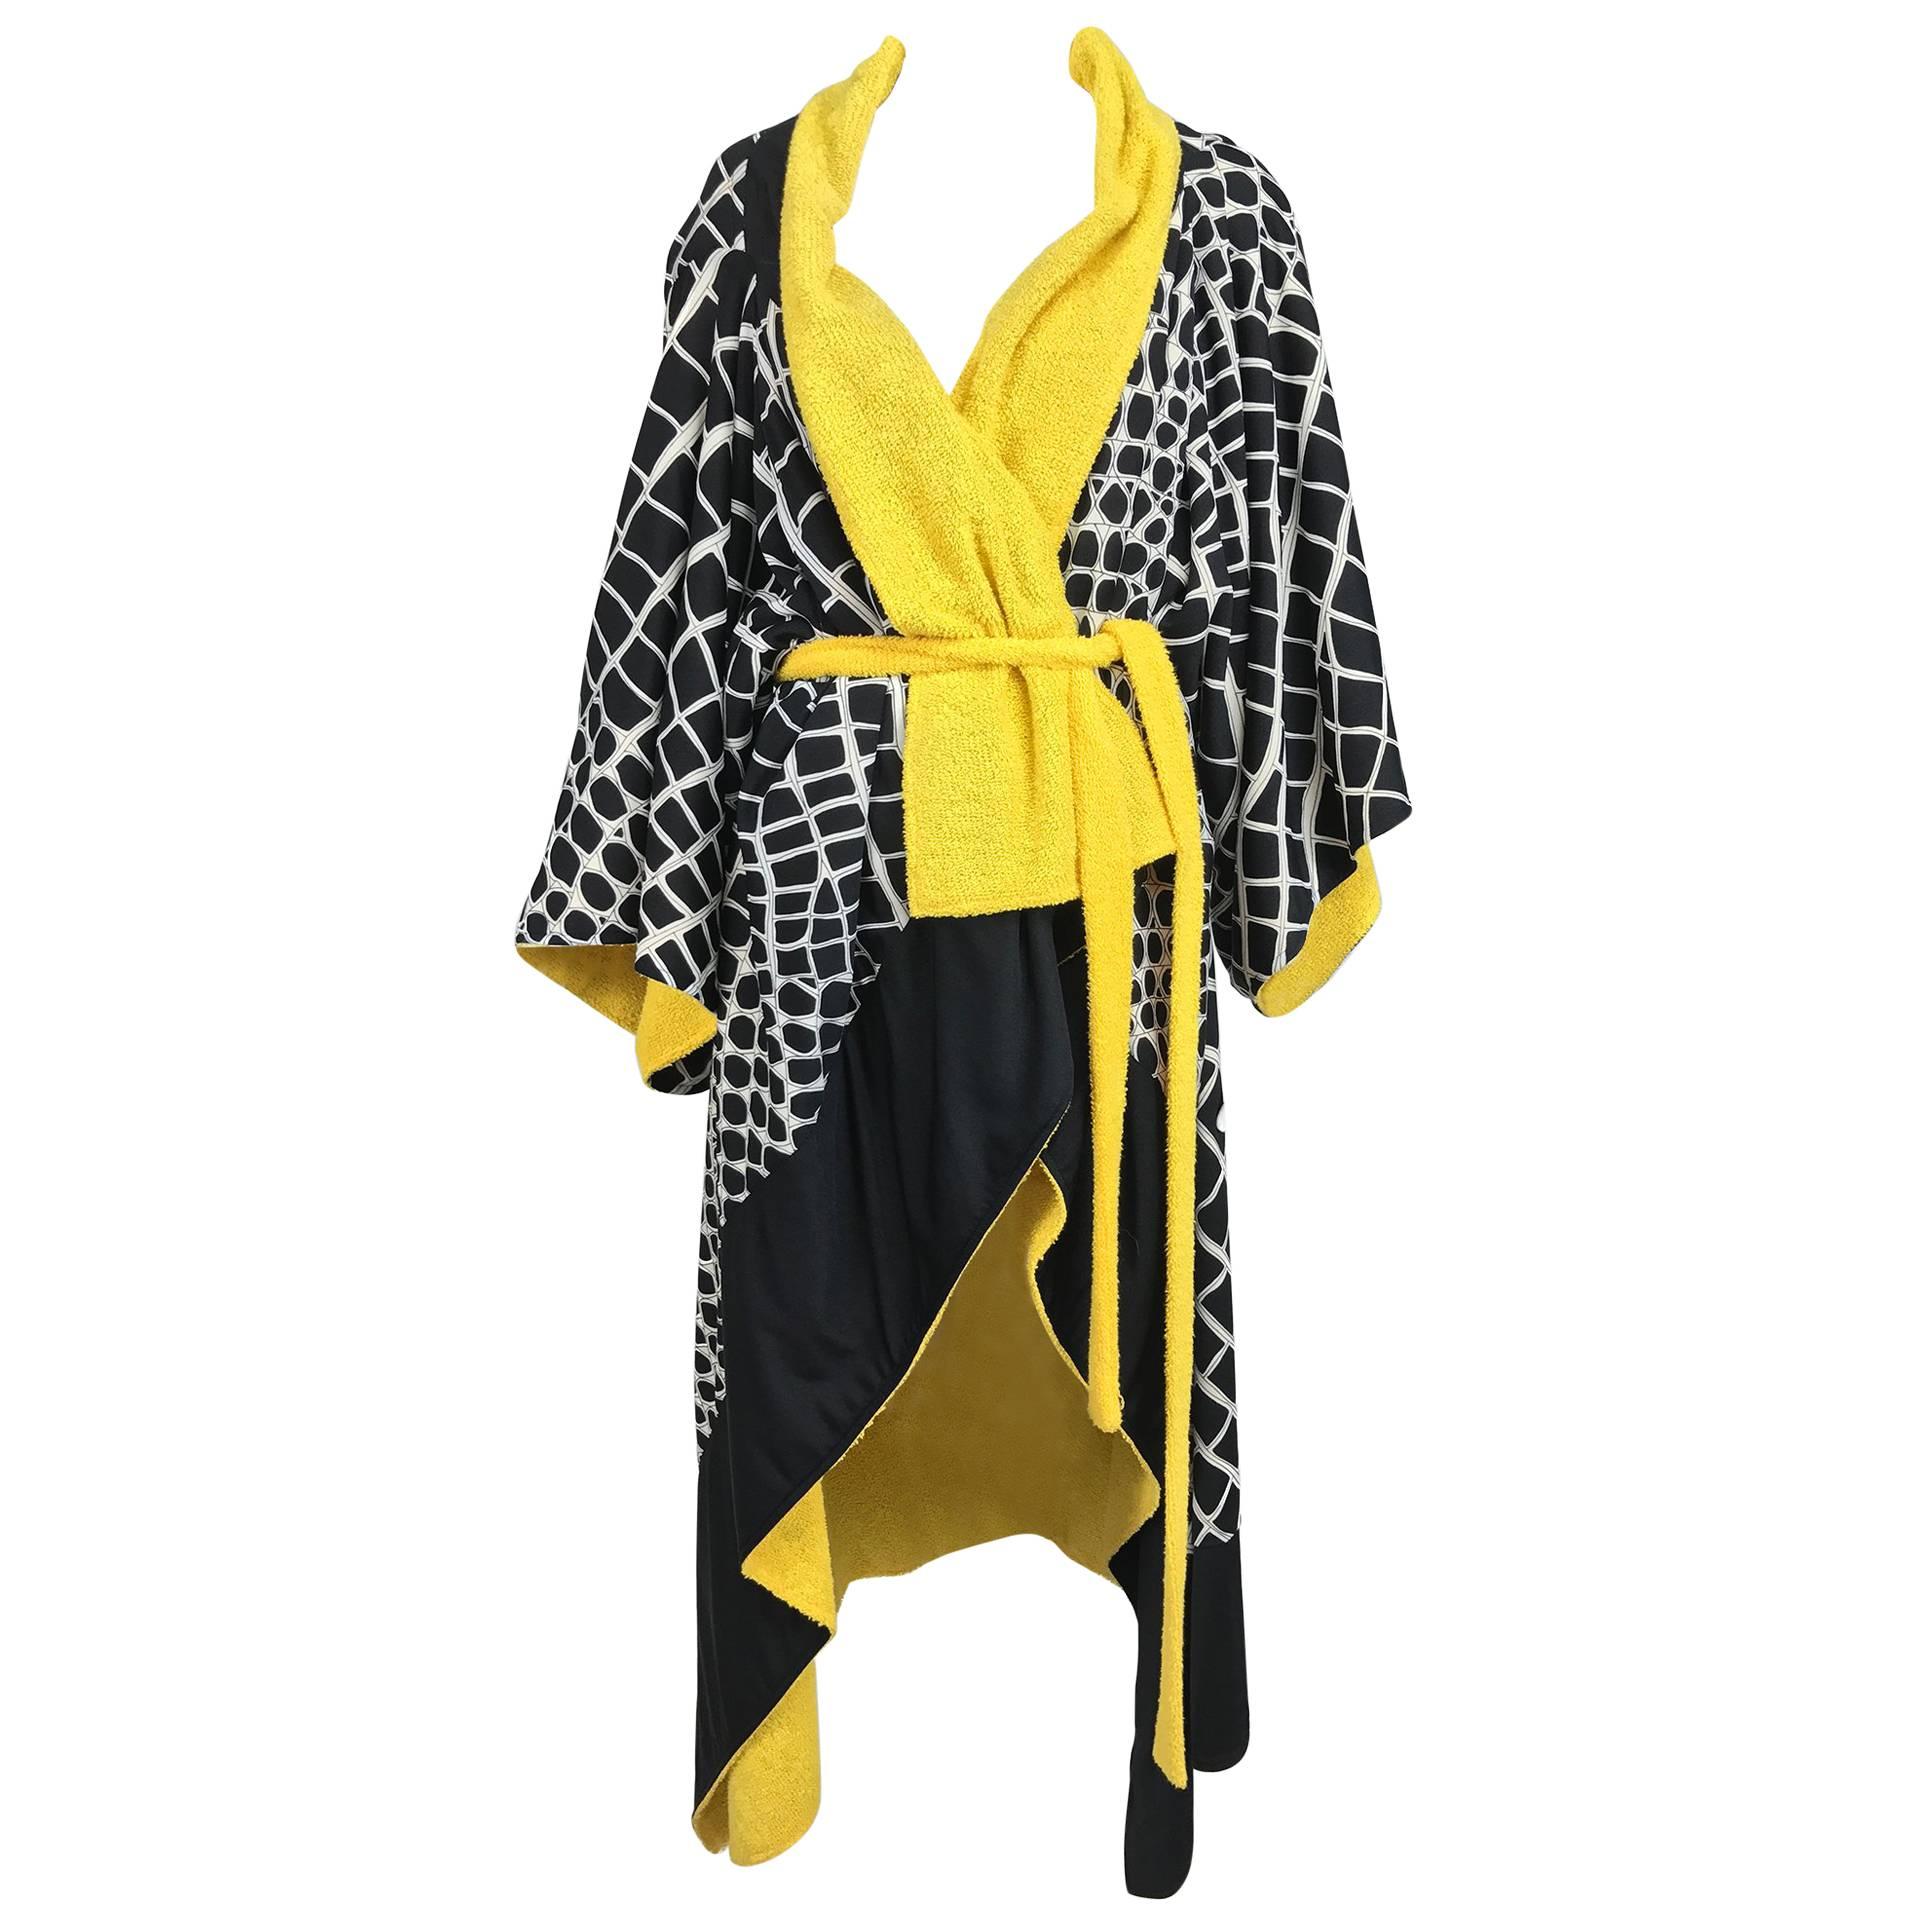 Vintage Gottex kimono style pool or beach coat black white and yellow 1980s